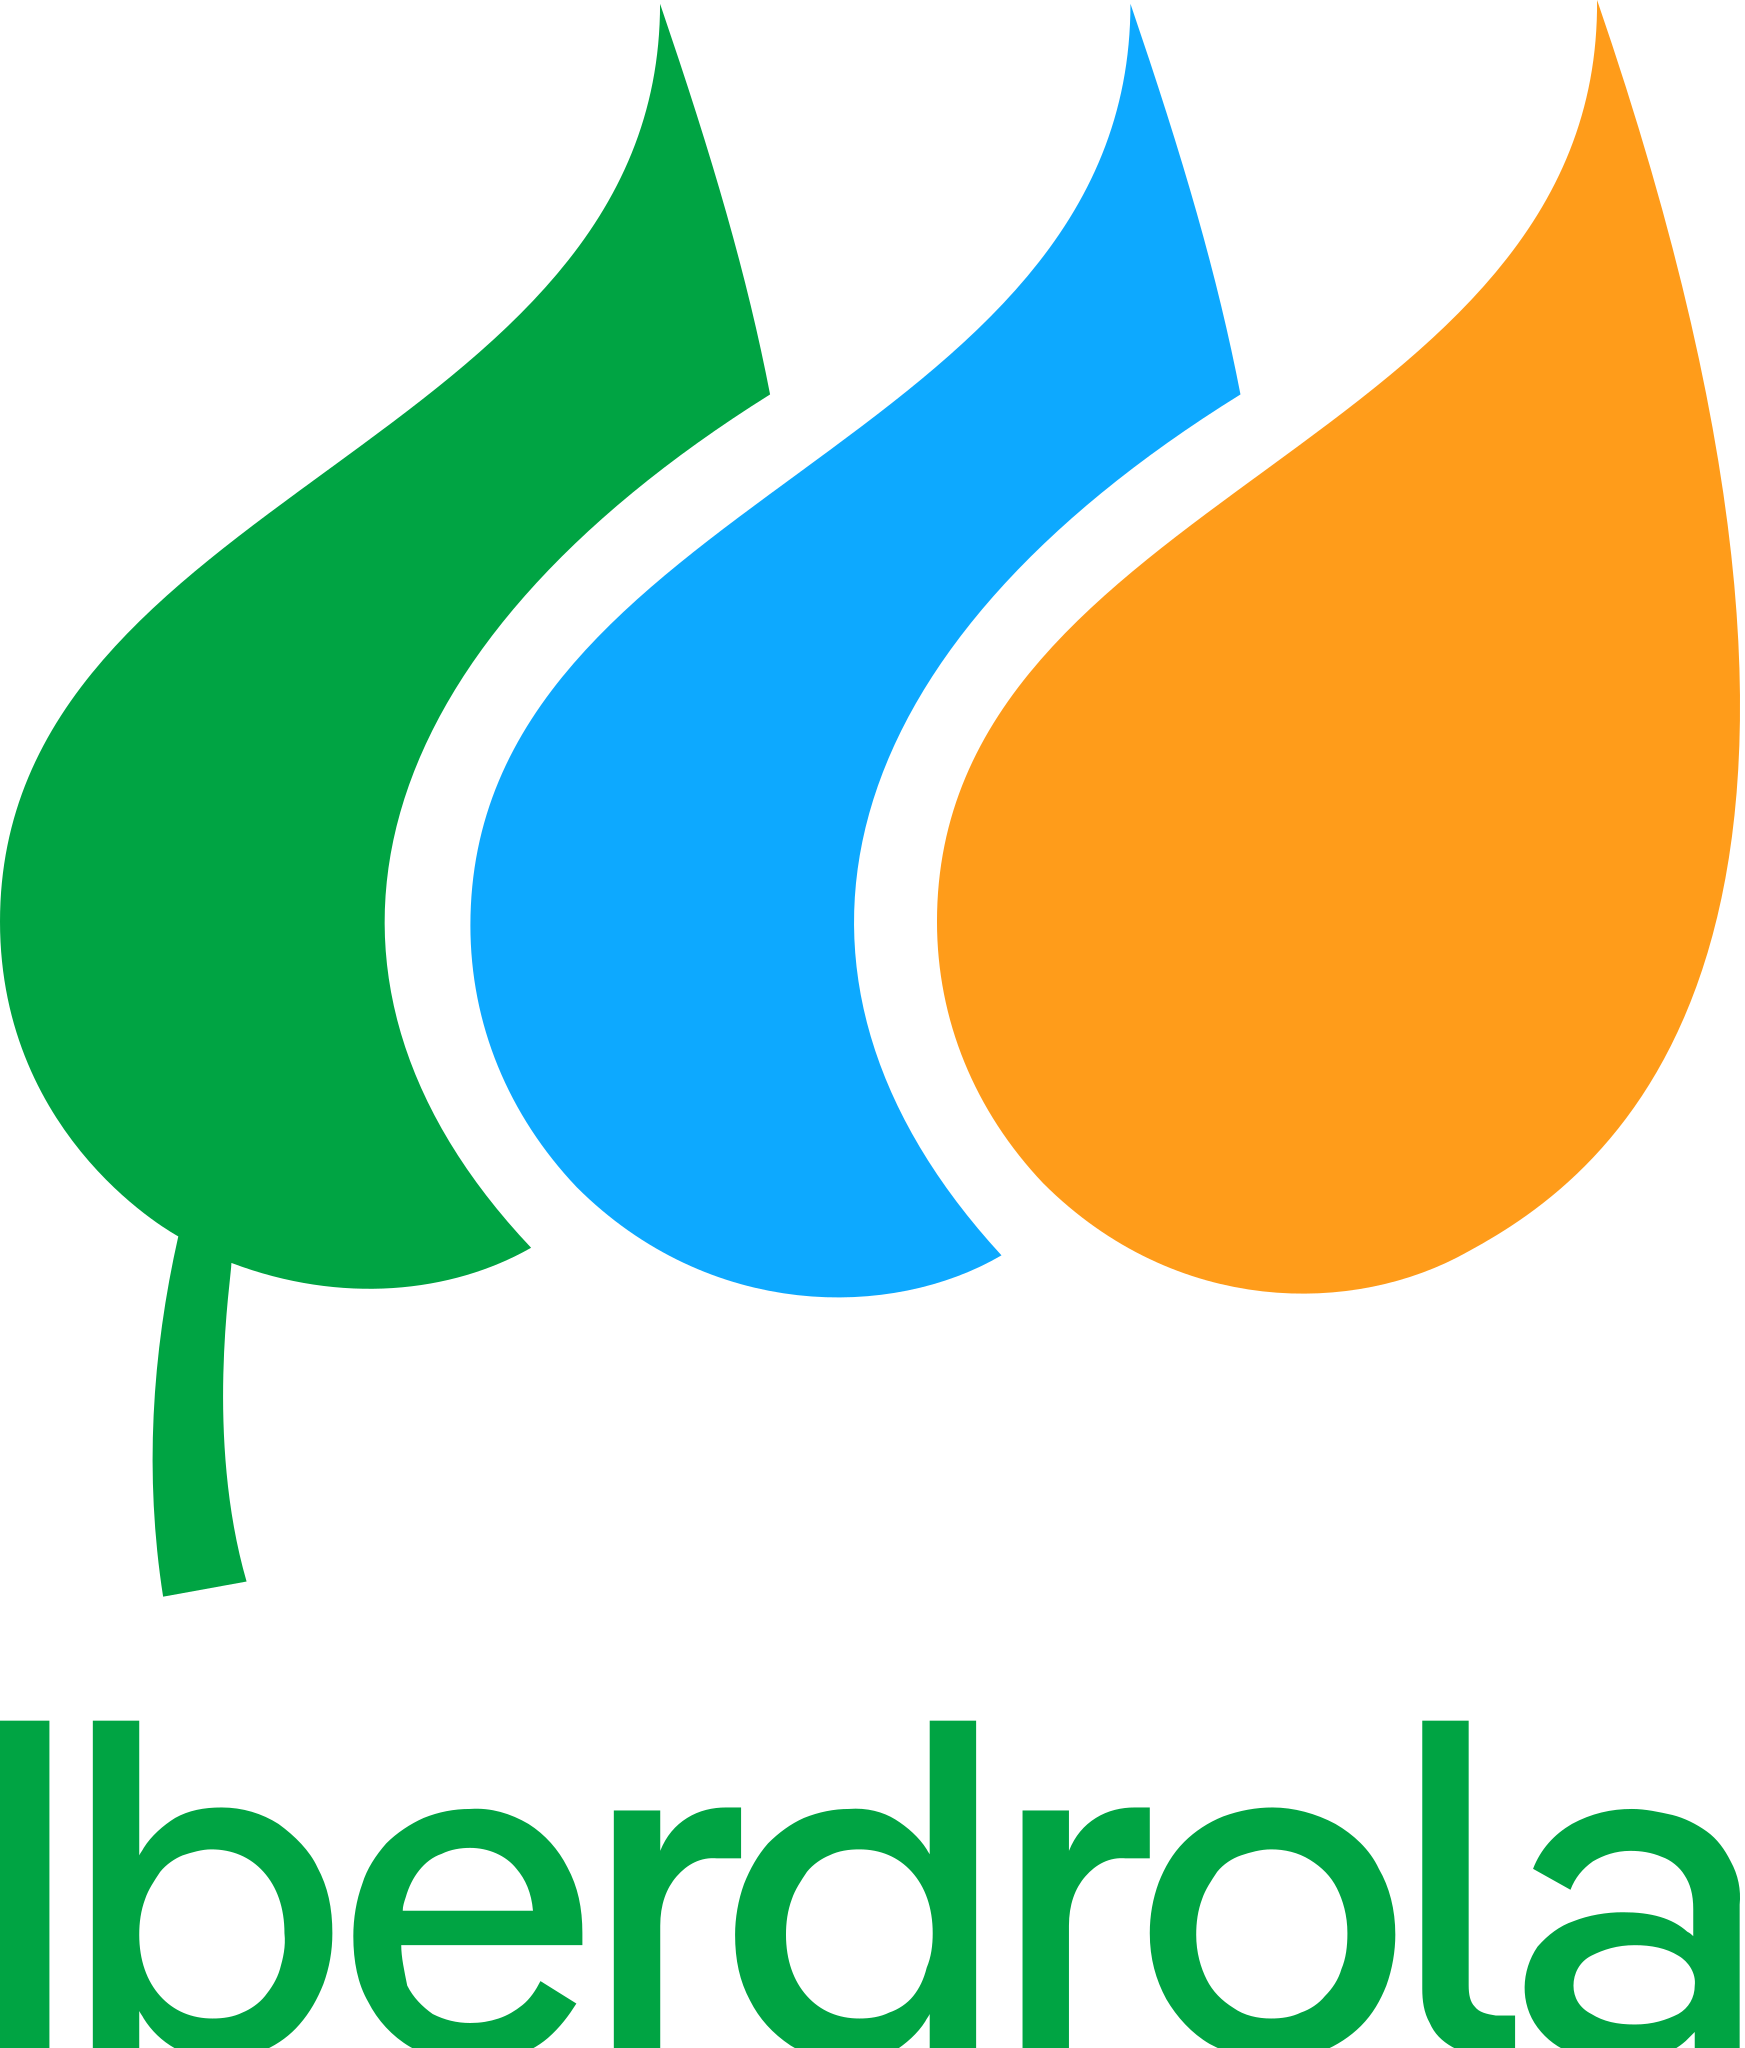 Iberdrola Brand Logo